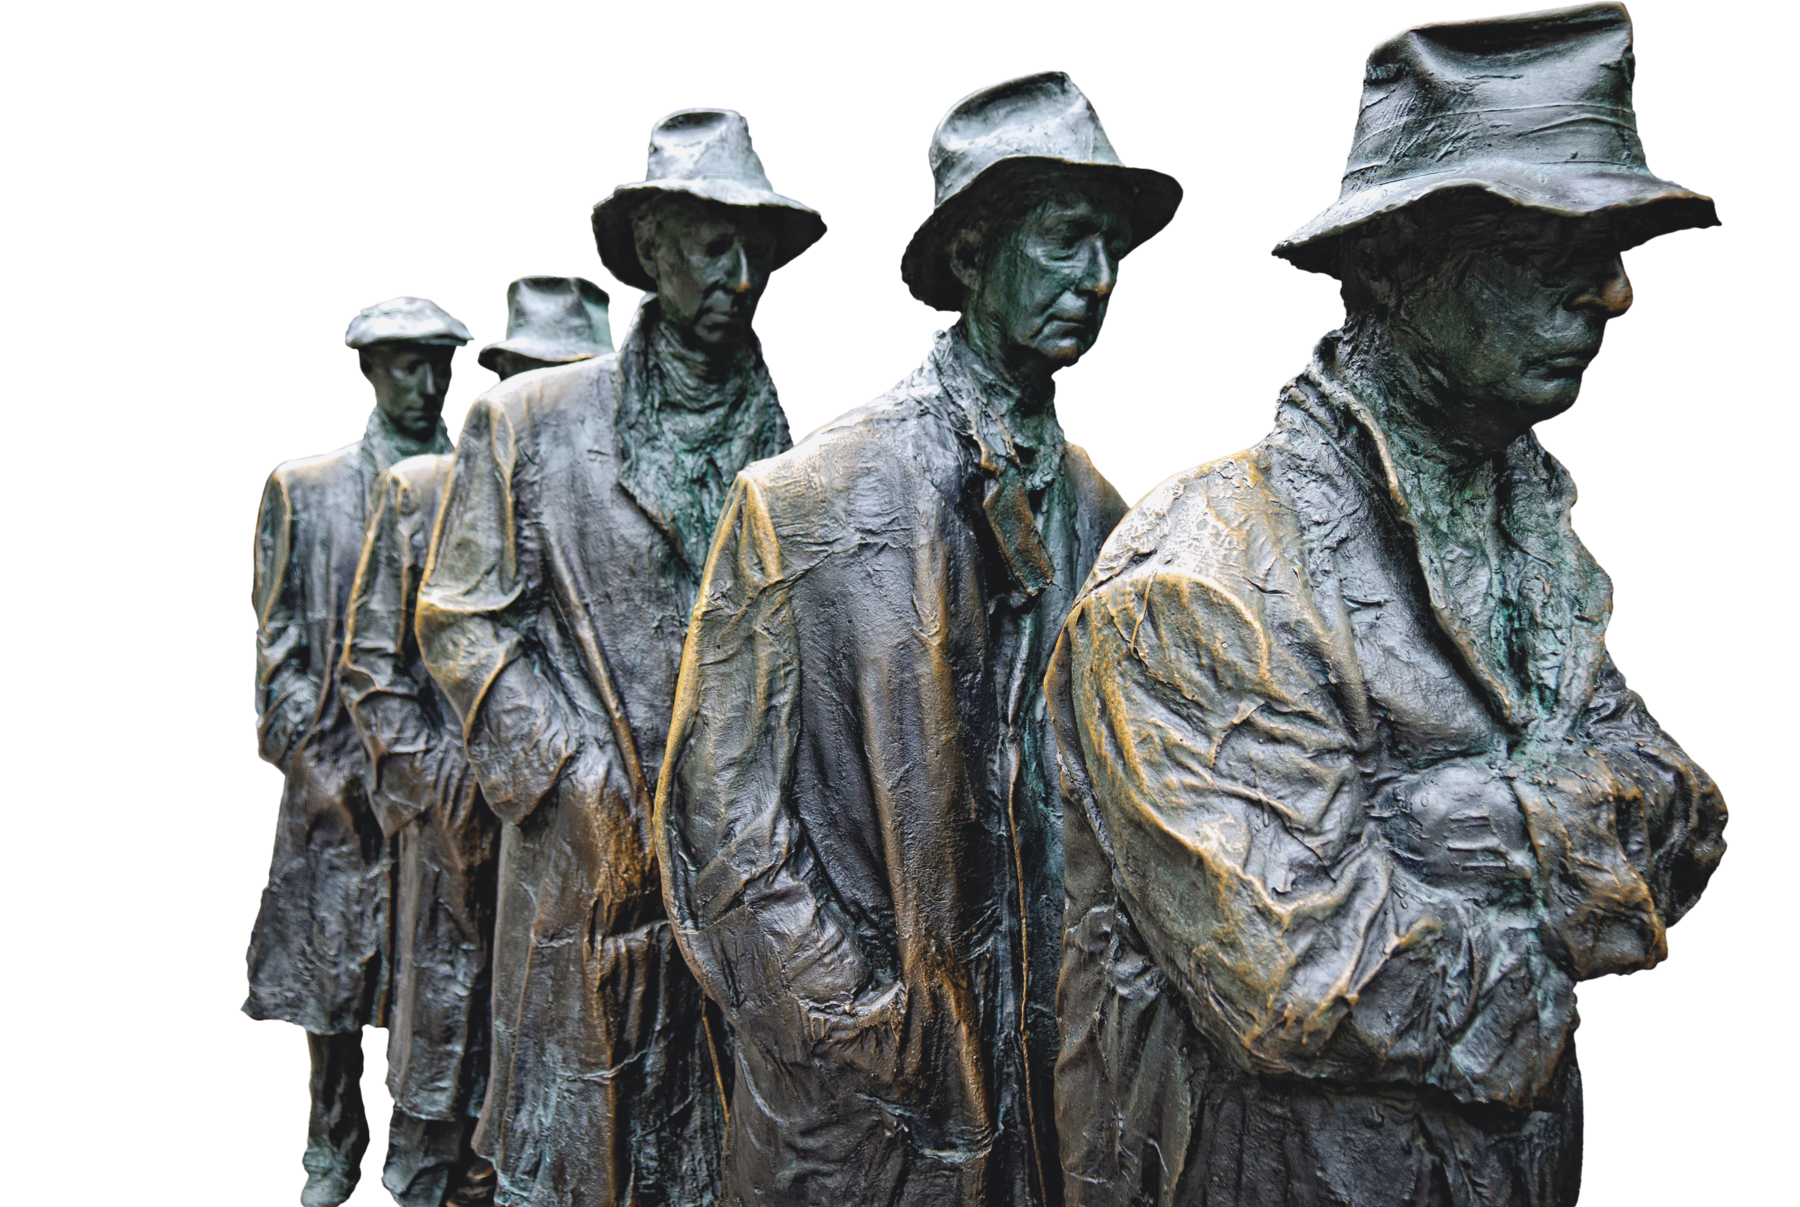 Escultura. Homens em bronze dispostos em fila. Eles são magros e usam casacos compridos e chapéus simples. Estão cabisbaixos. O homem da frente está com os braços cruzados, os demais têm as mãos nos bolsos.